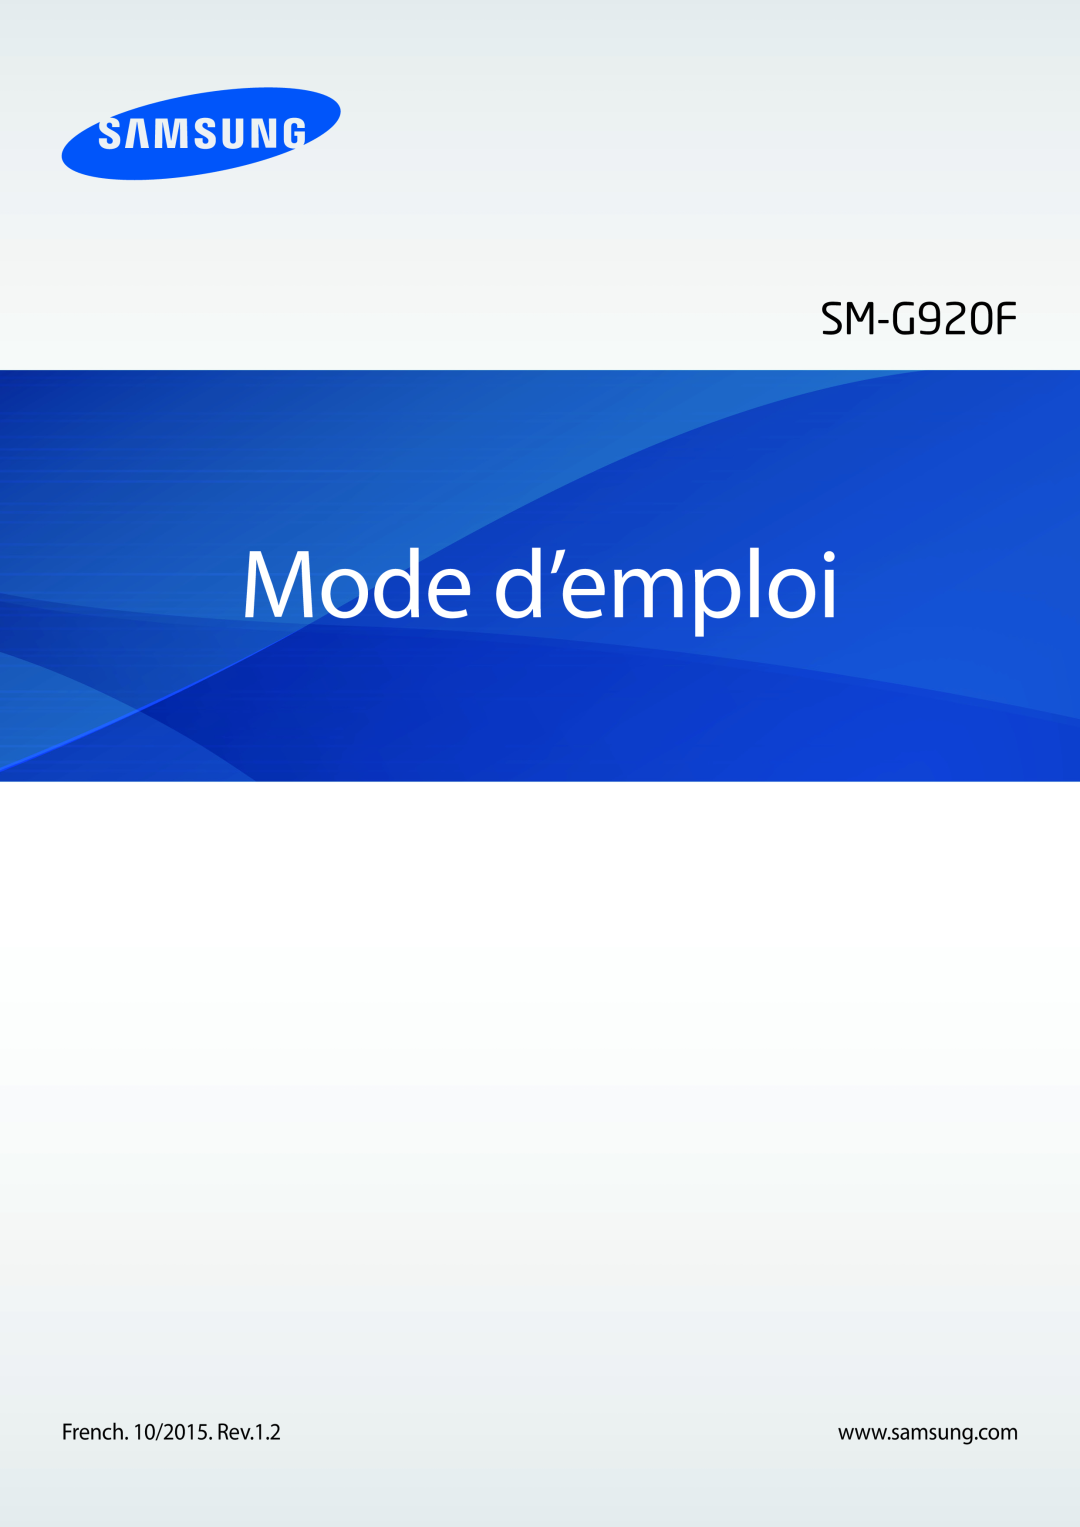 Samsung SM-G920FZKAXEF, SM-G920FZWAXEF, SM-G920FZBAXEF, SM-G920FZDAXEF manual Mode d’emploi 